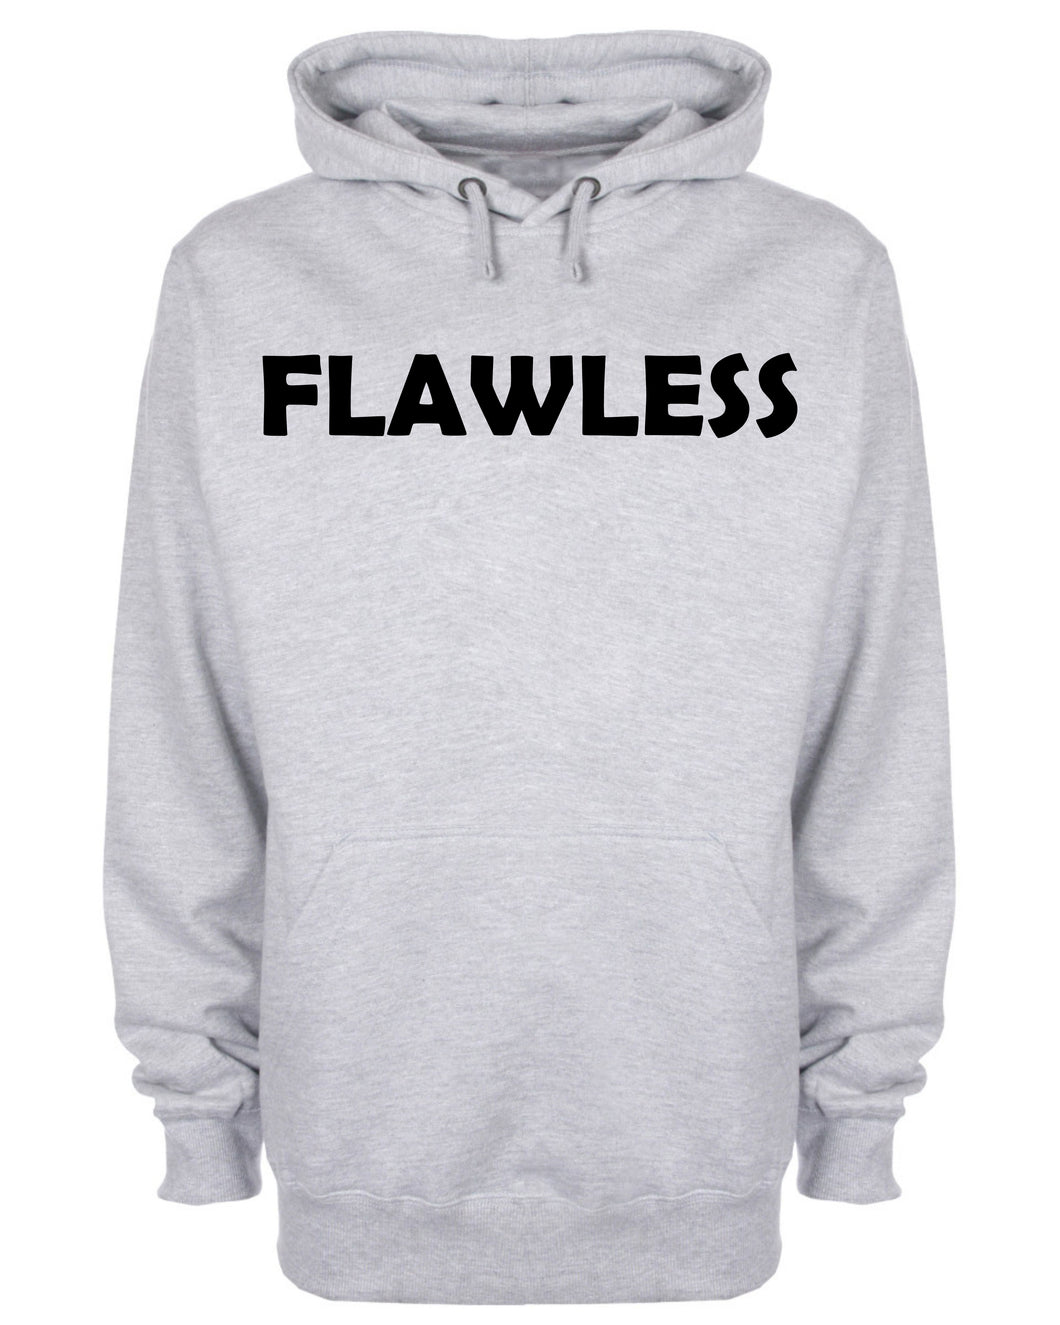 Flawless Hoodie No Mistake Perfect by Jesus Grace Slogan Hooded Sweatshirt